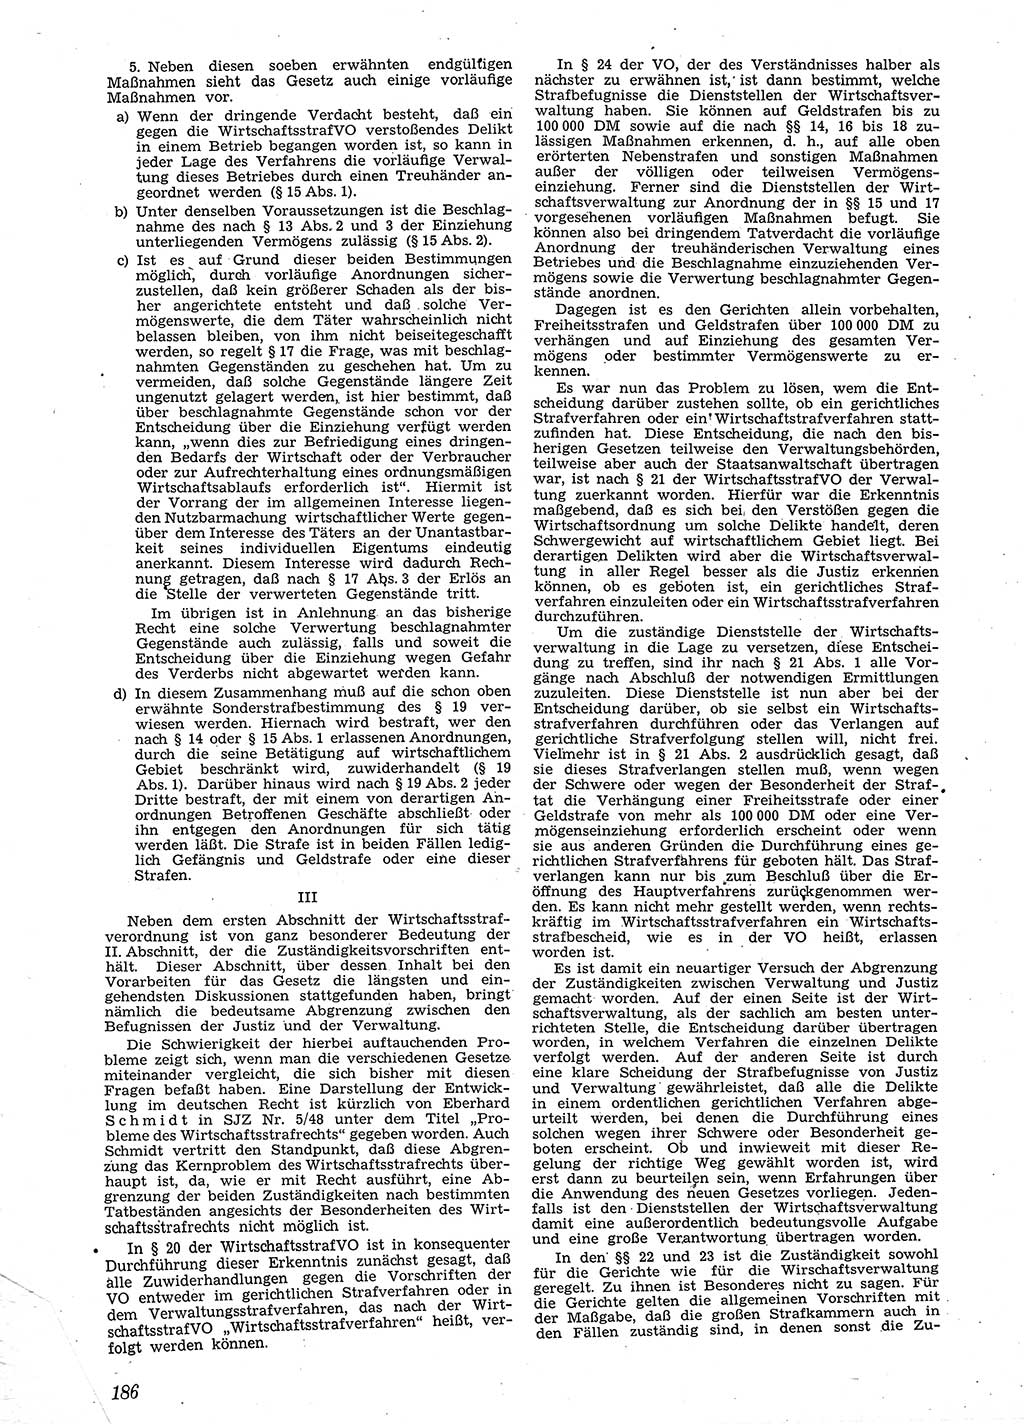 Neue Justiz (NJ), Zeitschrift für Recht und Rechtswissenschaft [Sowjetische Besatzungszone (SBZ) Deutschland], 2. Jahrgang 1948, Seite 186 (NJ SBZ Dtl. 1948, S. 186)